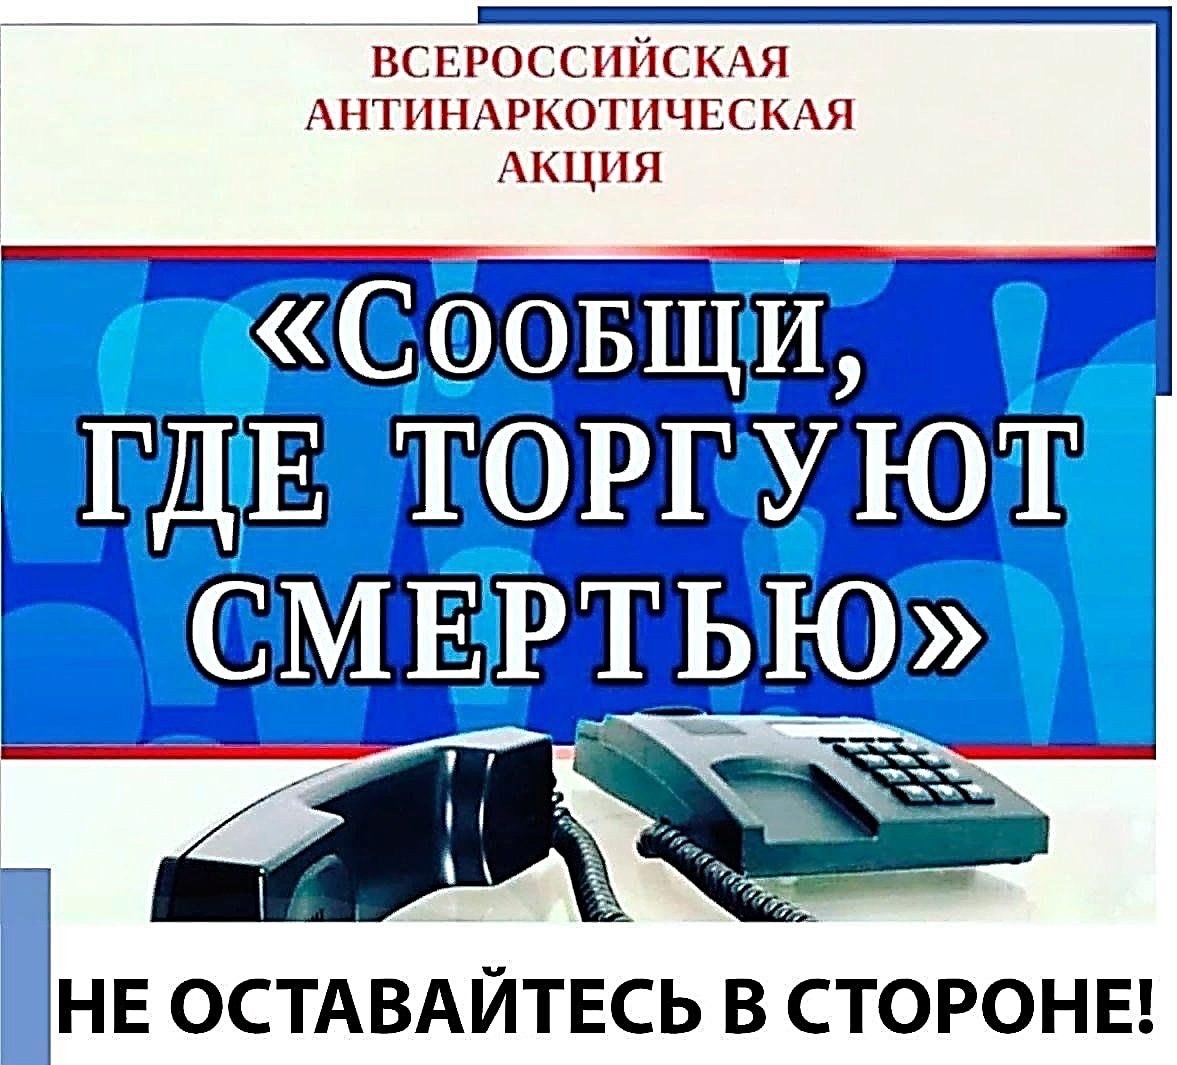 Общероссийская антинаркотическая акция.